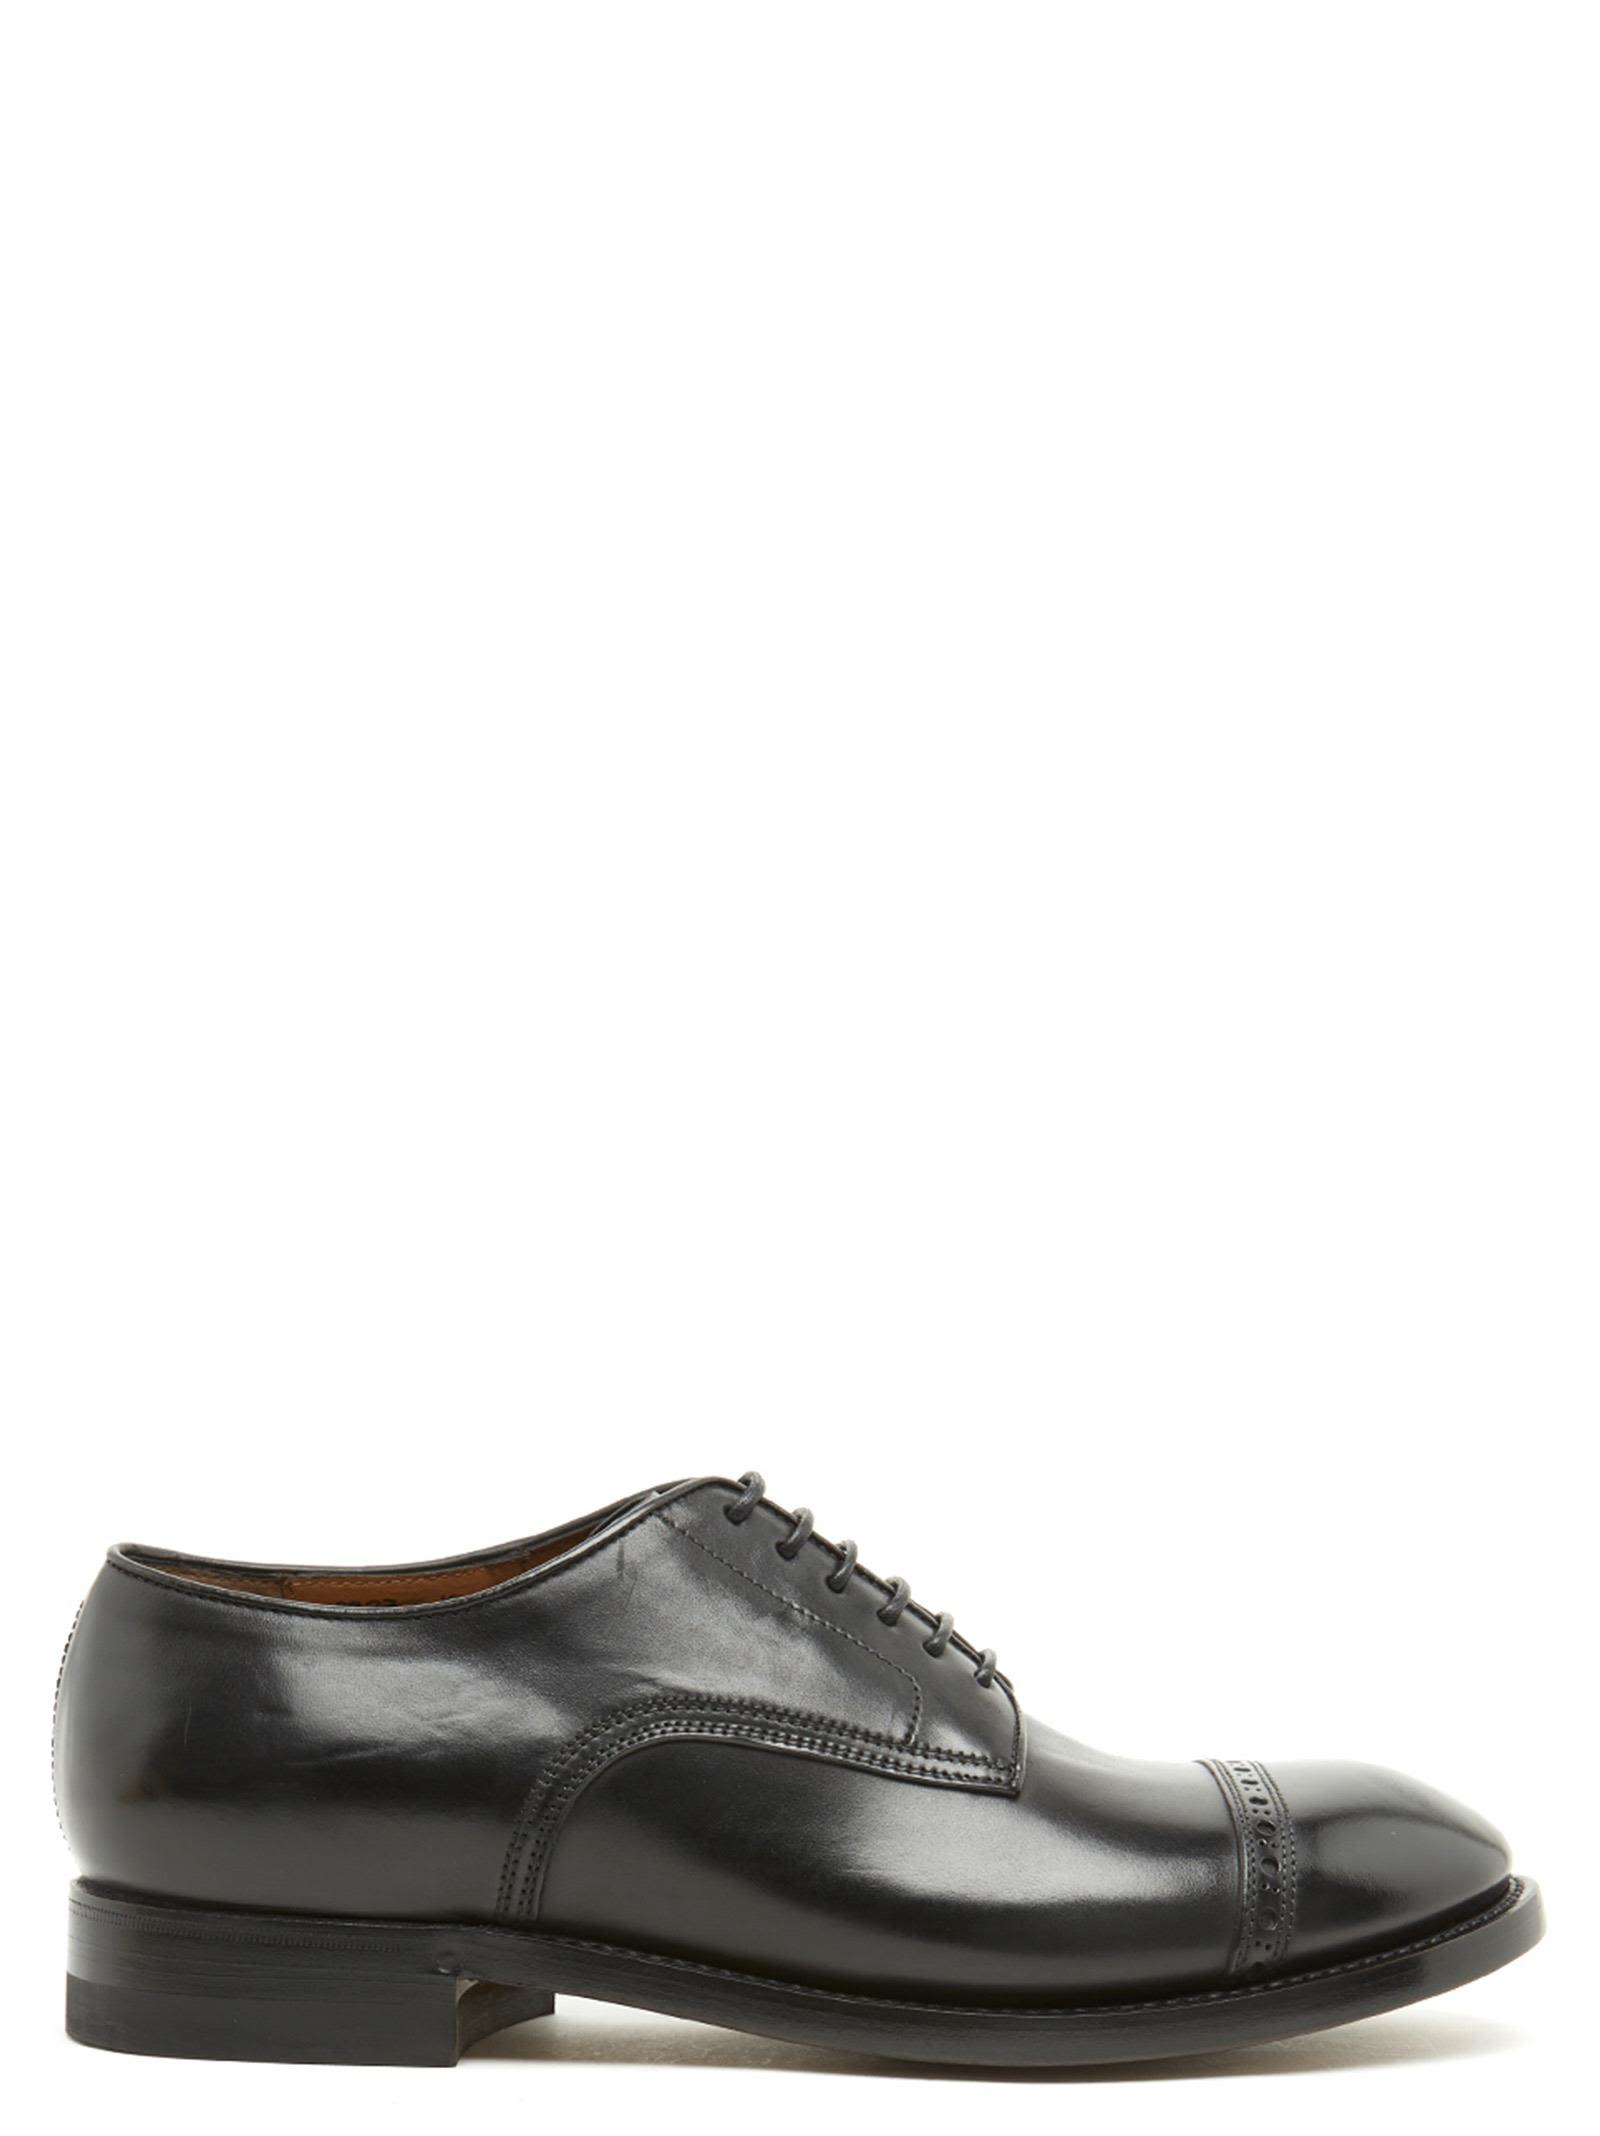 Silvano Sassetti Silvano Sassetti Shoes - Black - 10710637 | italist